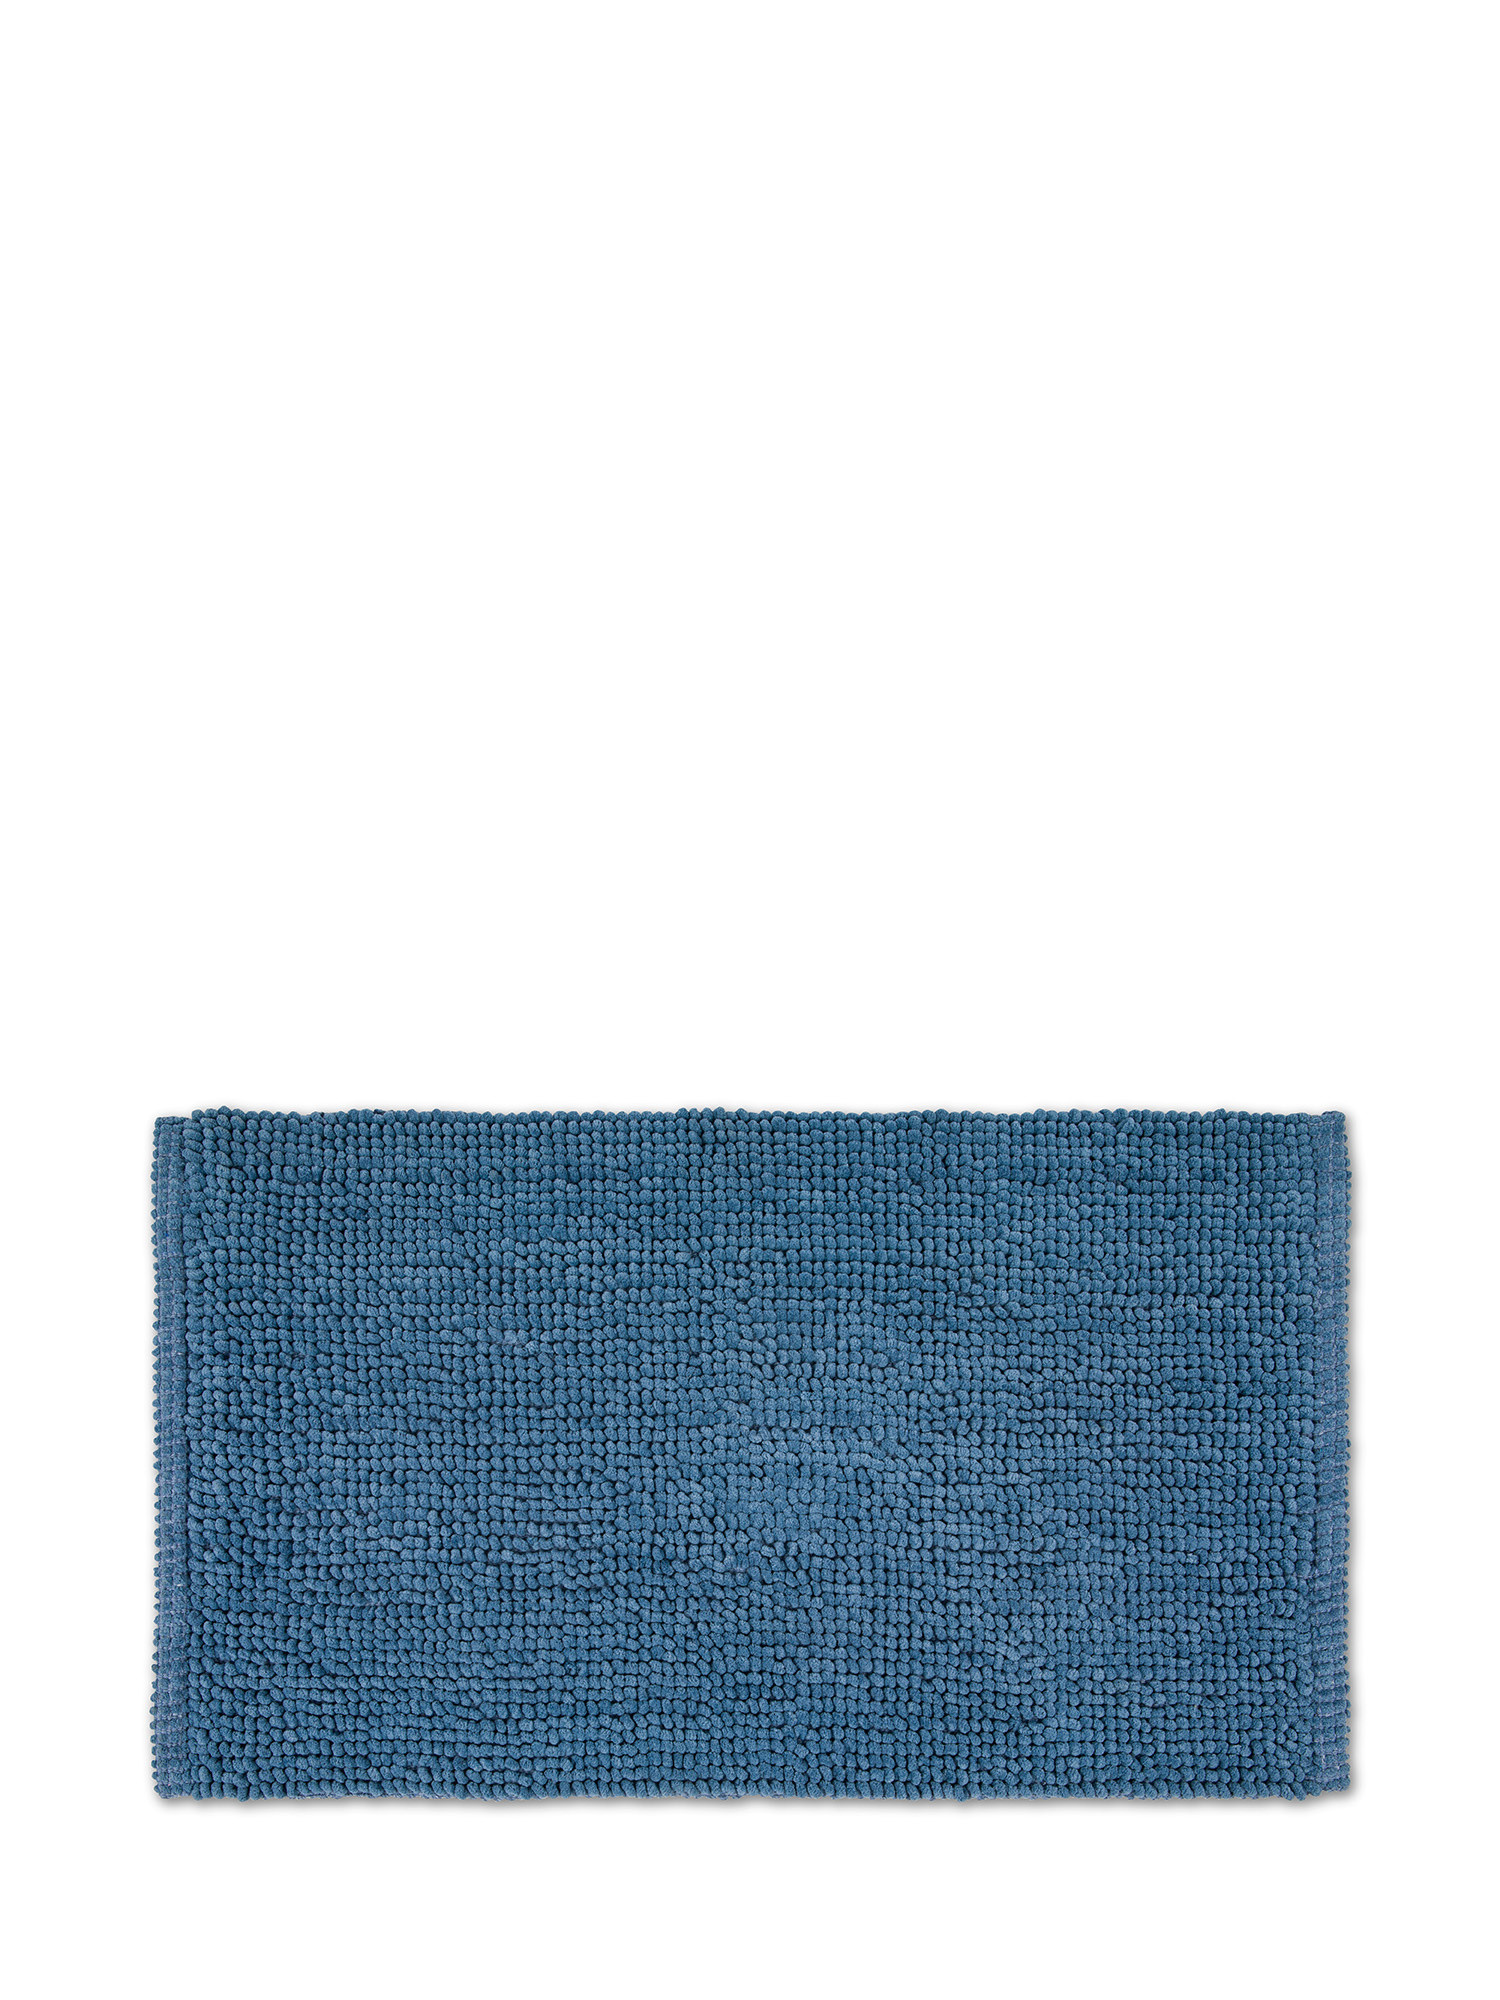 Коврик для ванной из шенилла с эффектом лохматого цвета Coincasa, синий